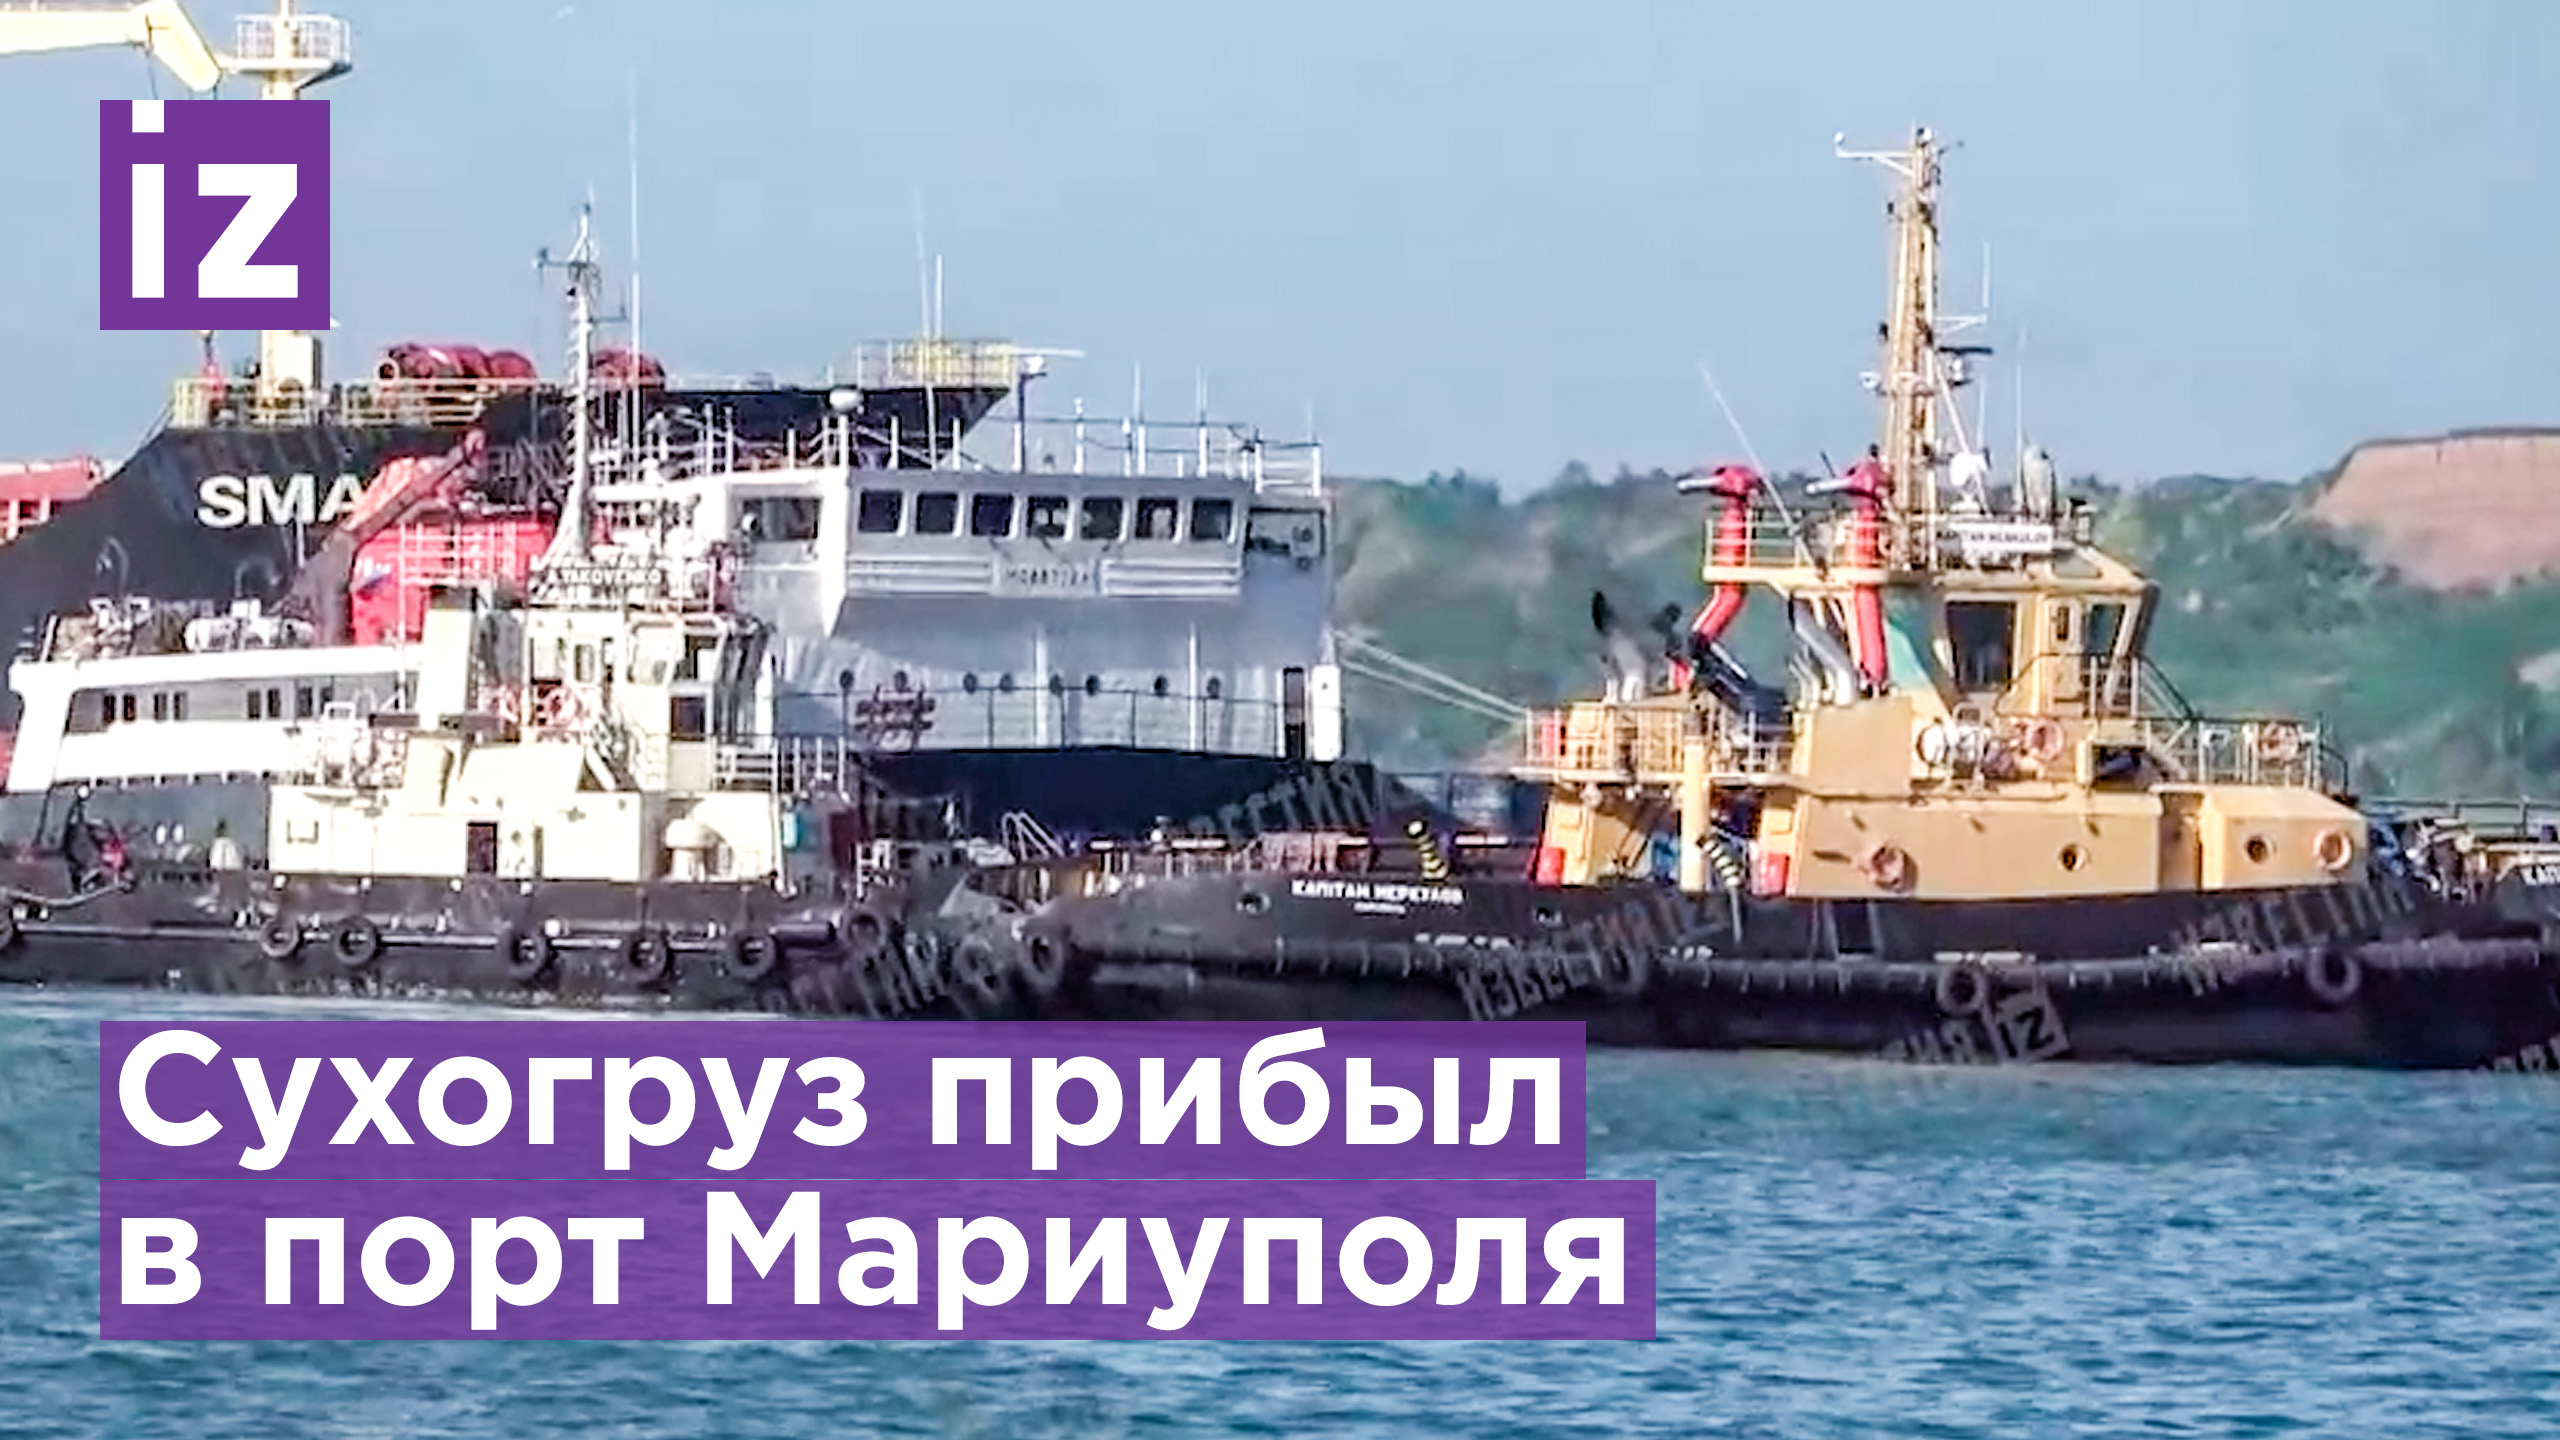 Первое судно прибыло в освобожденный порт Мариуполя / Известия